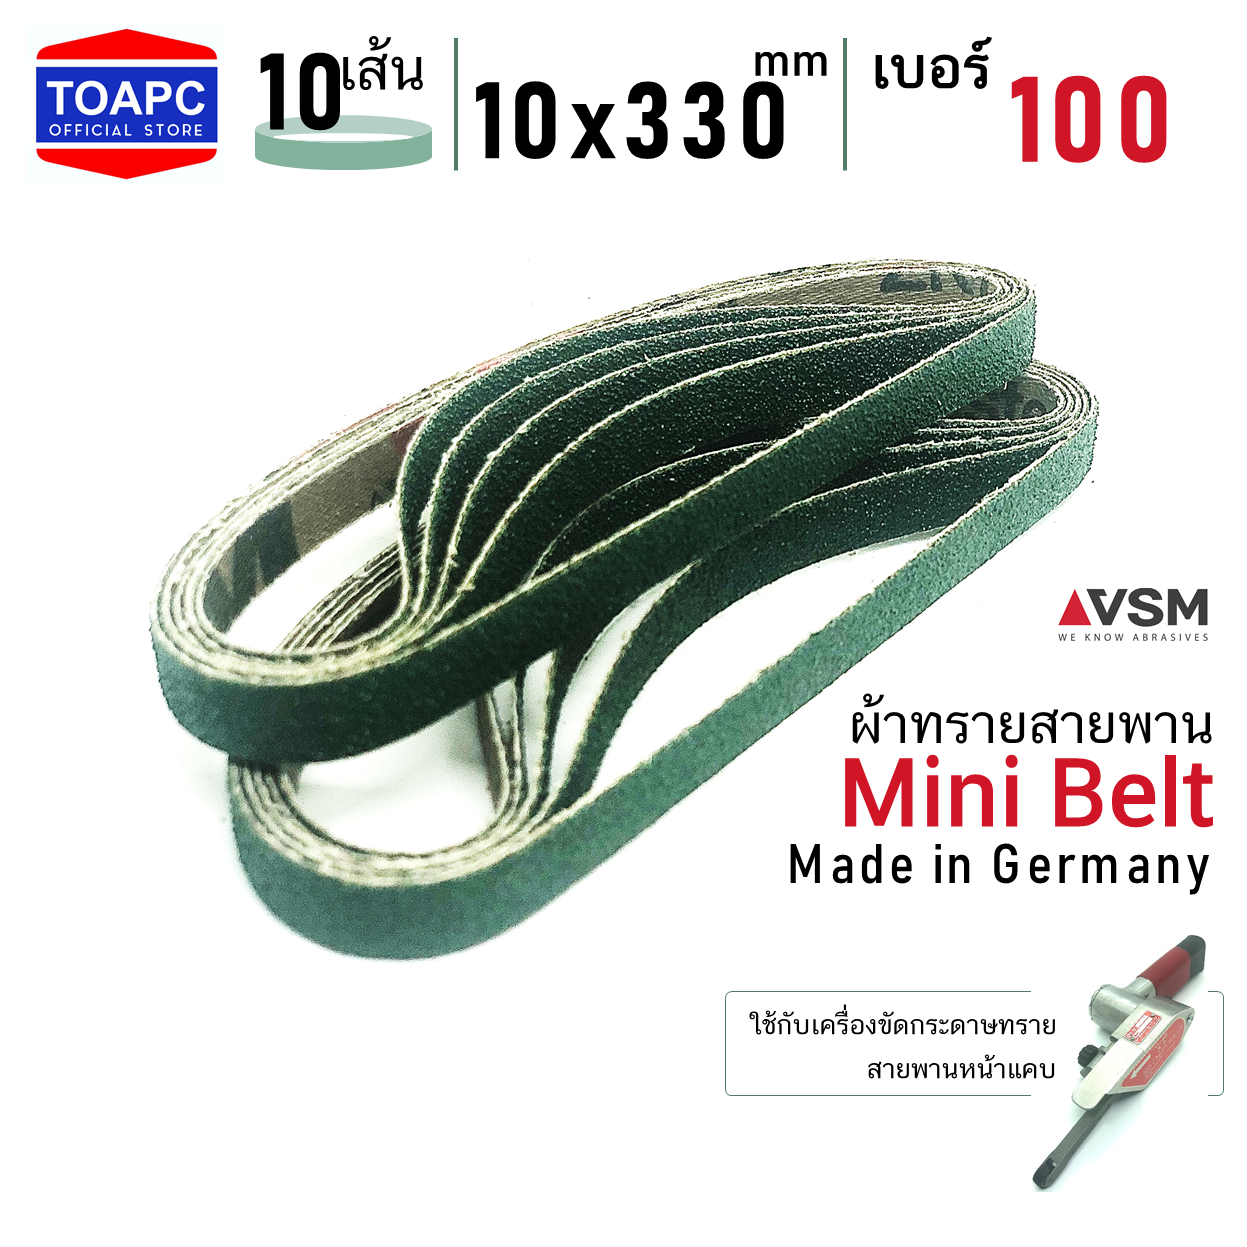 ผ้าทรายสายพาน เบอร์ 100 10x330 mm VSM Mini Belt จำนวน 10 เส้น